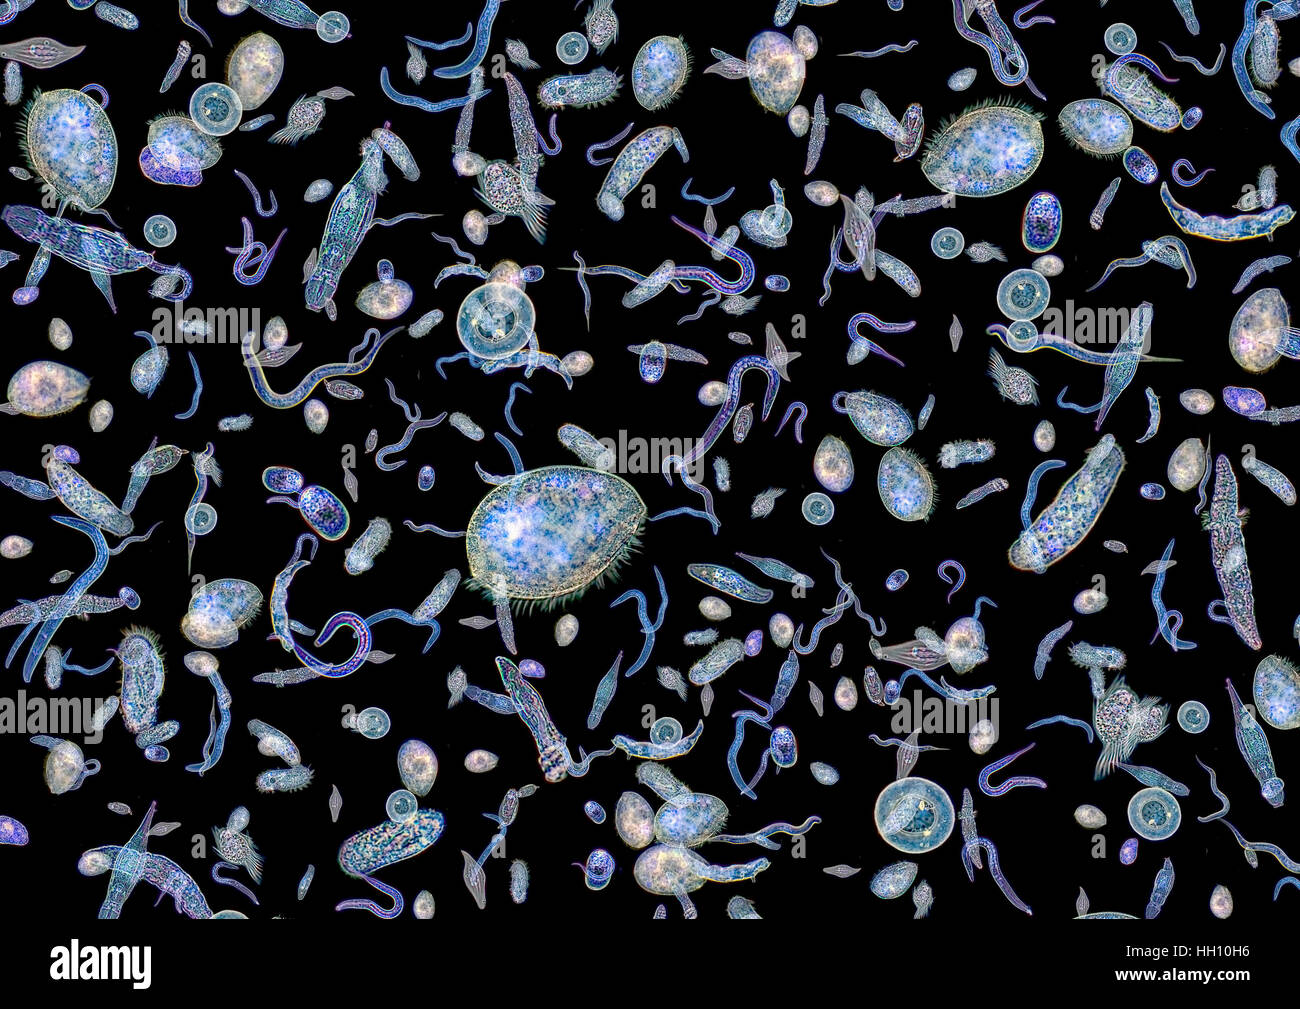 La micrographie montrant beaucoup de différents micro-organismes d'eau douce translucide retour à l'obscurité Banque D'Images